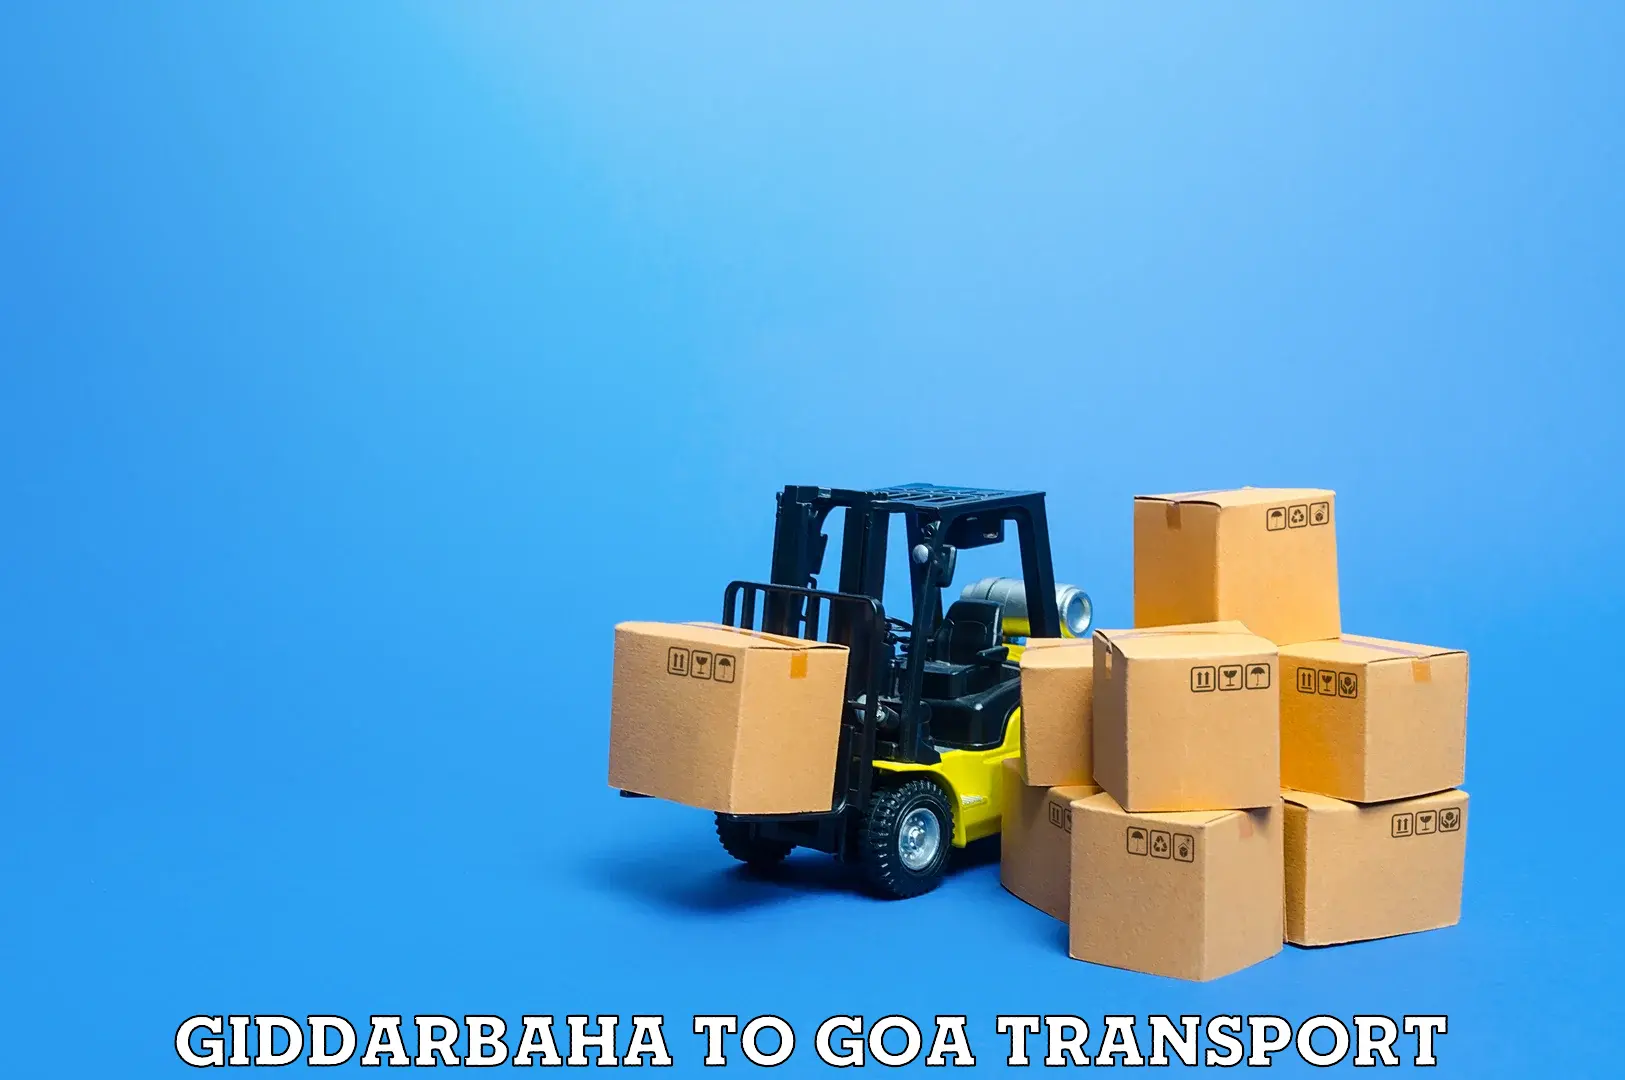 Express transport services Giddarbaha to Panaji